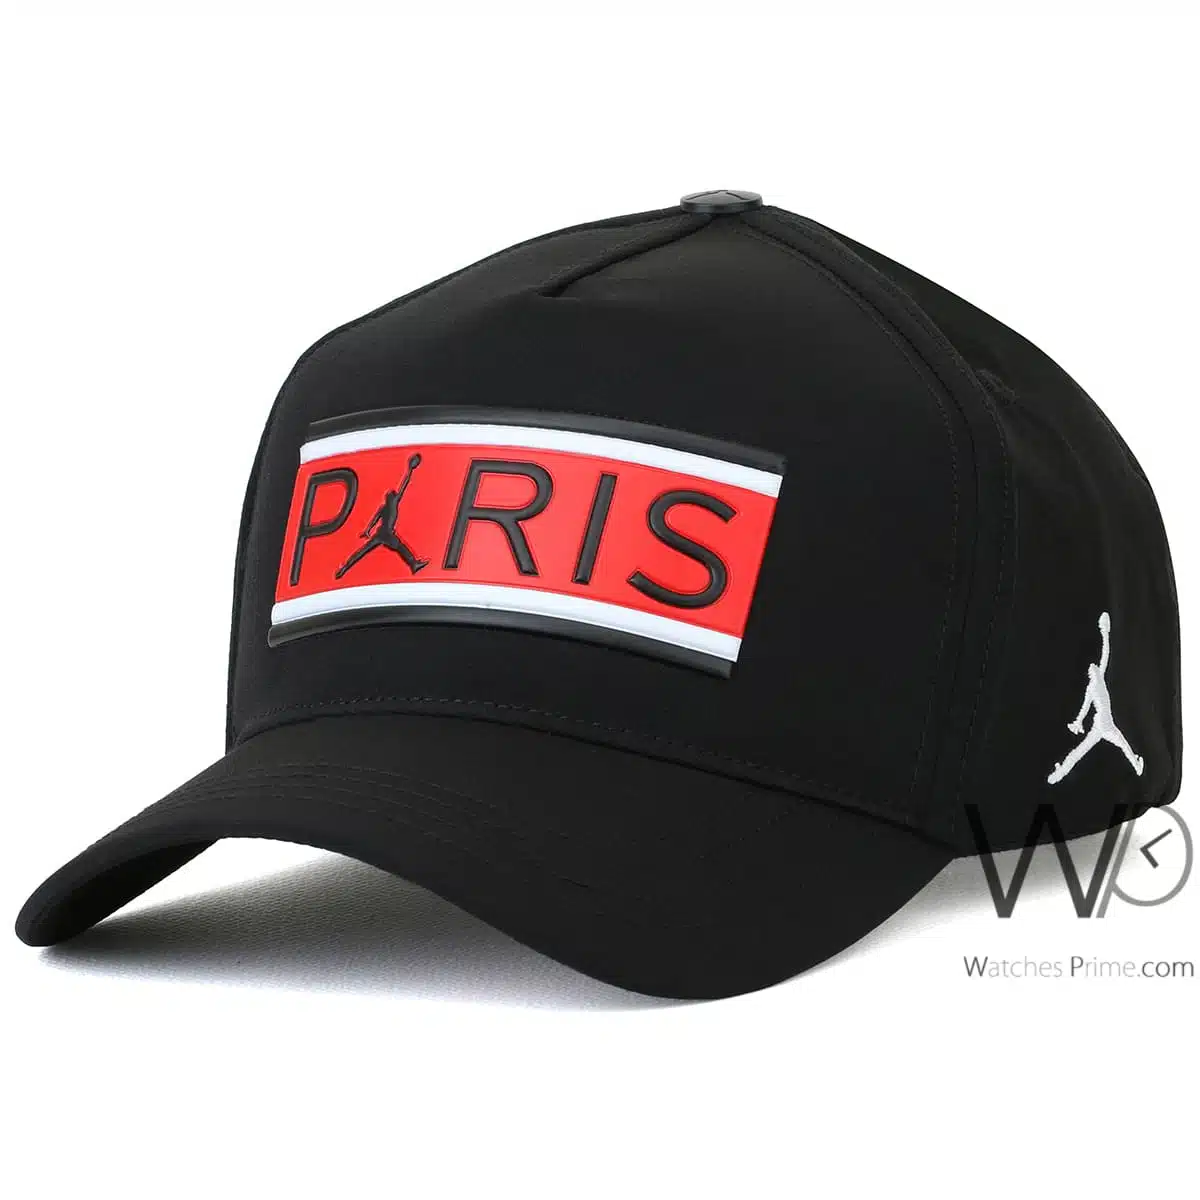 Paris Jordan Baseball Cap Black | Watches Prime